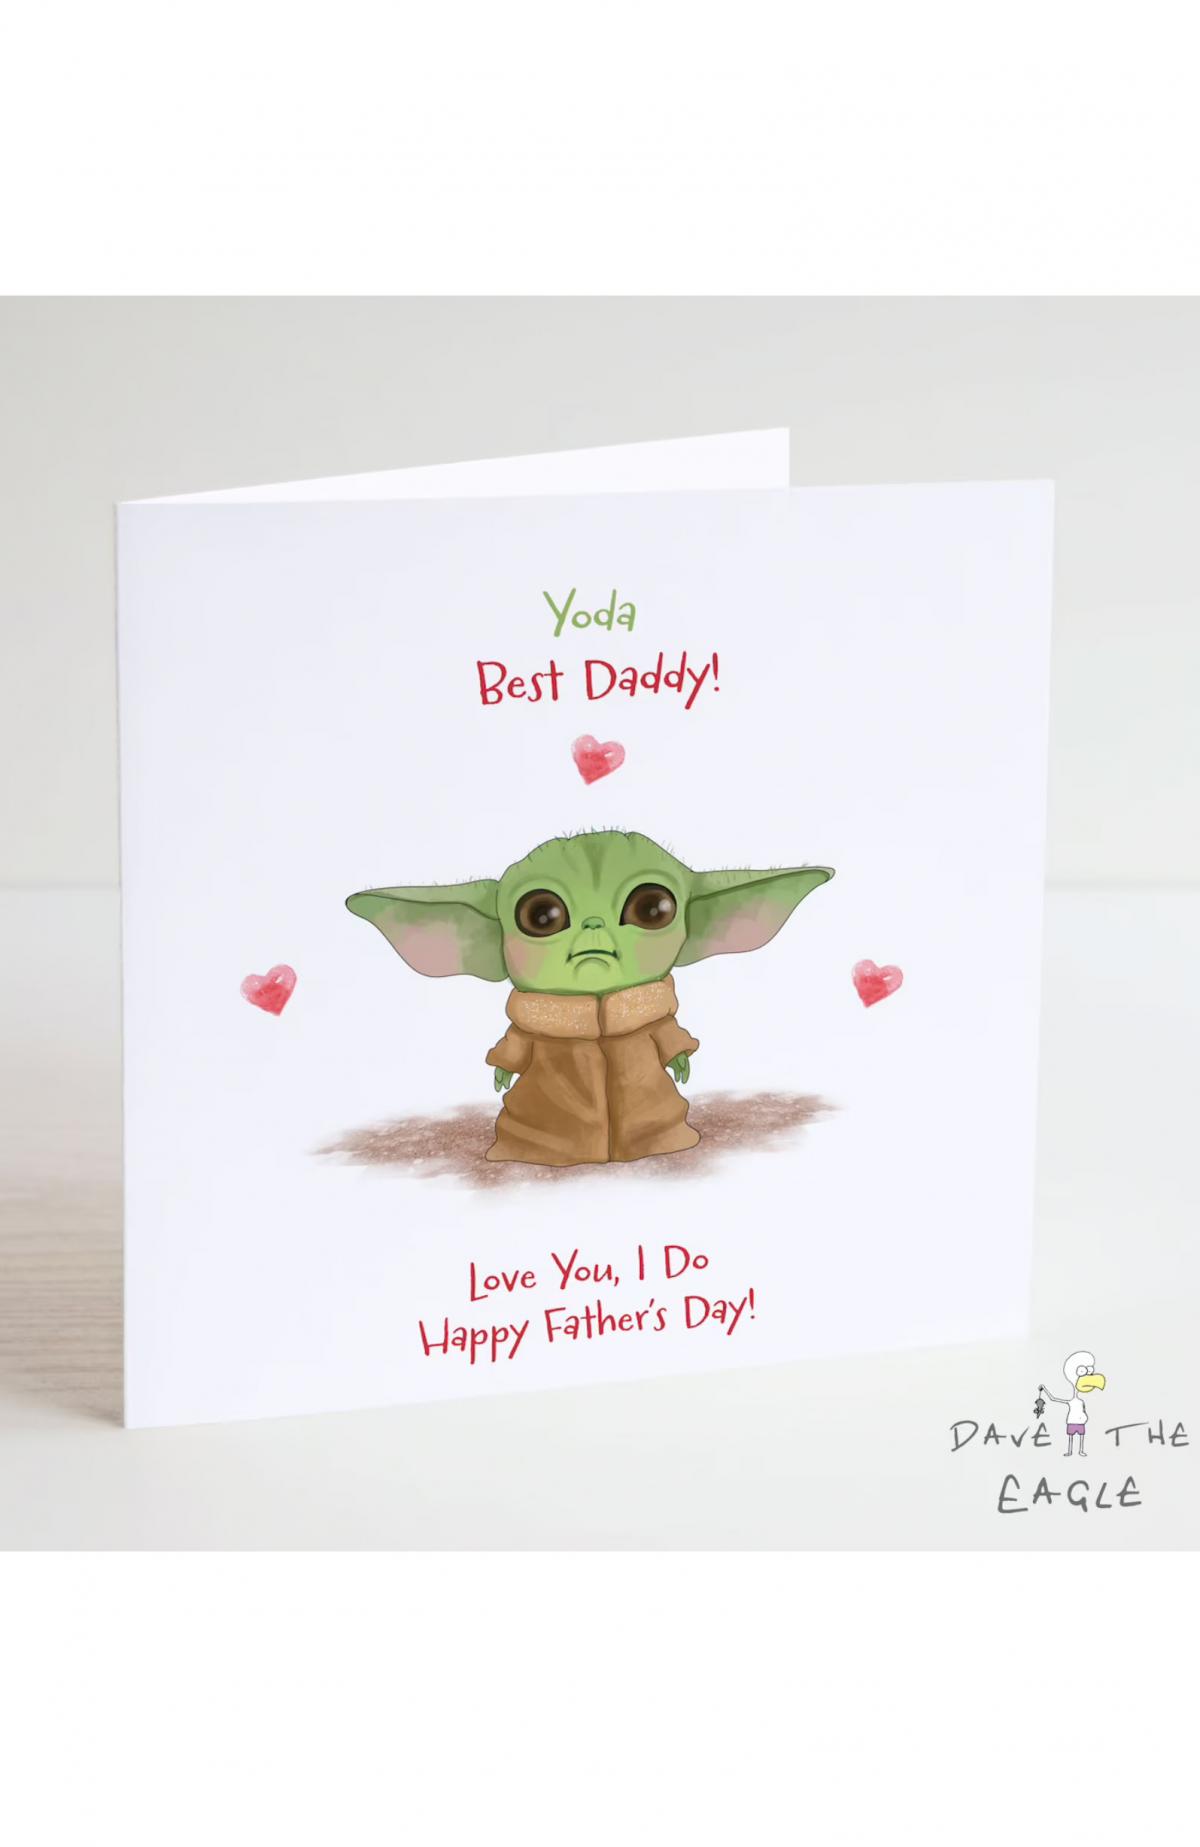 Yoda best daddy